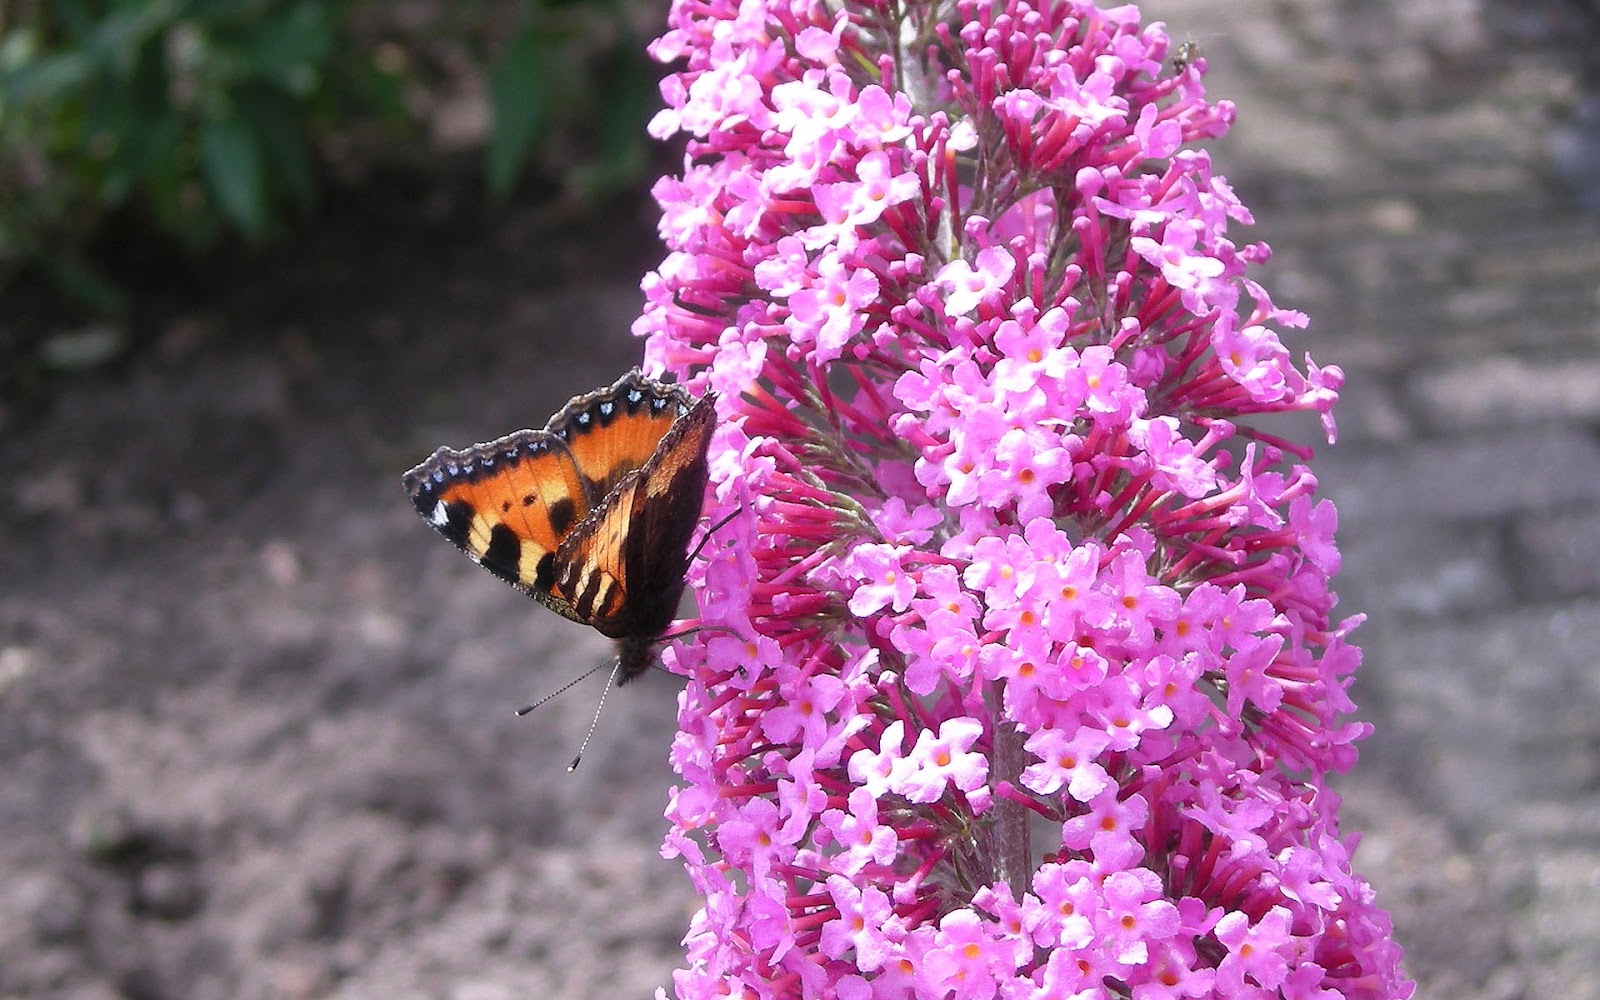 http://4.bp.blogspot.com/-z1KOane5XJk/UDUTFy4OrqI/AAAAAAAAAz0/FaA73mL4EPk/s1600/mooie-vlinder-achtergrond-met-een-vlinder-op-een-roze-vlinderstruik-in-hartje-zomer-hd-bloemen-wallpaper.jpg